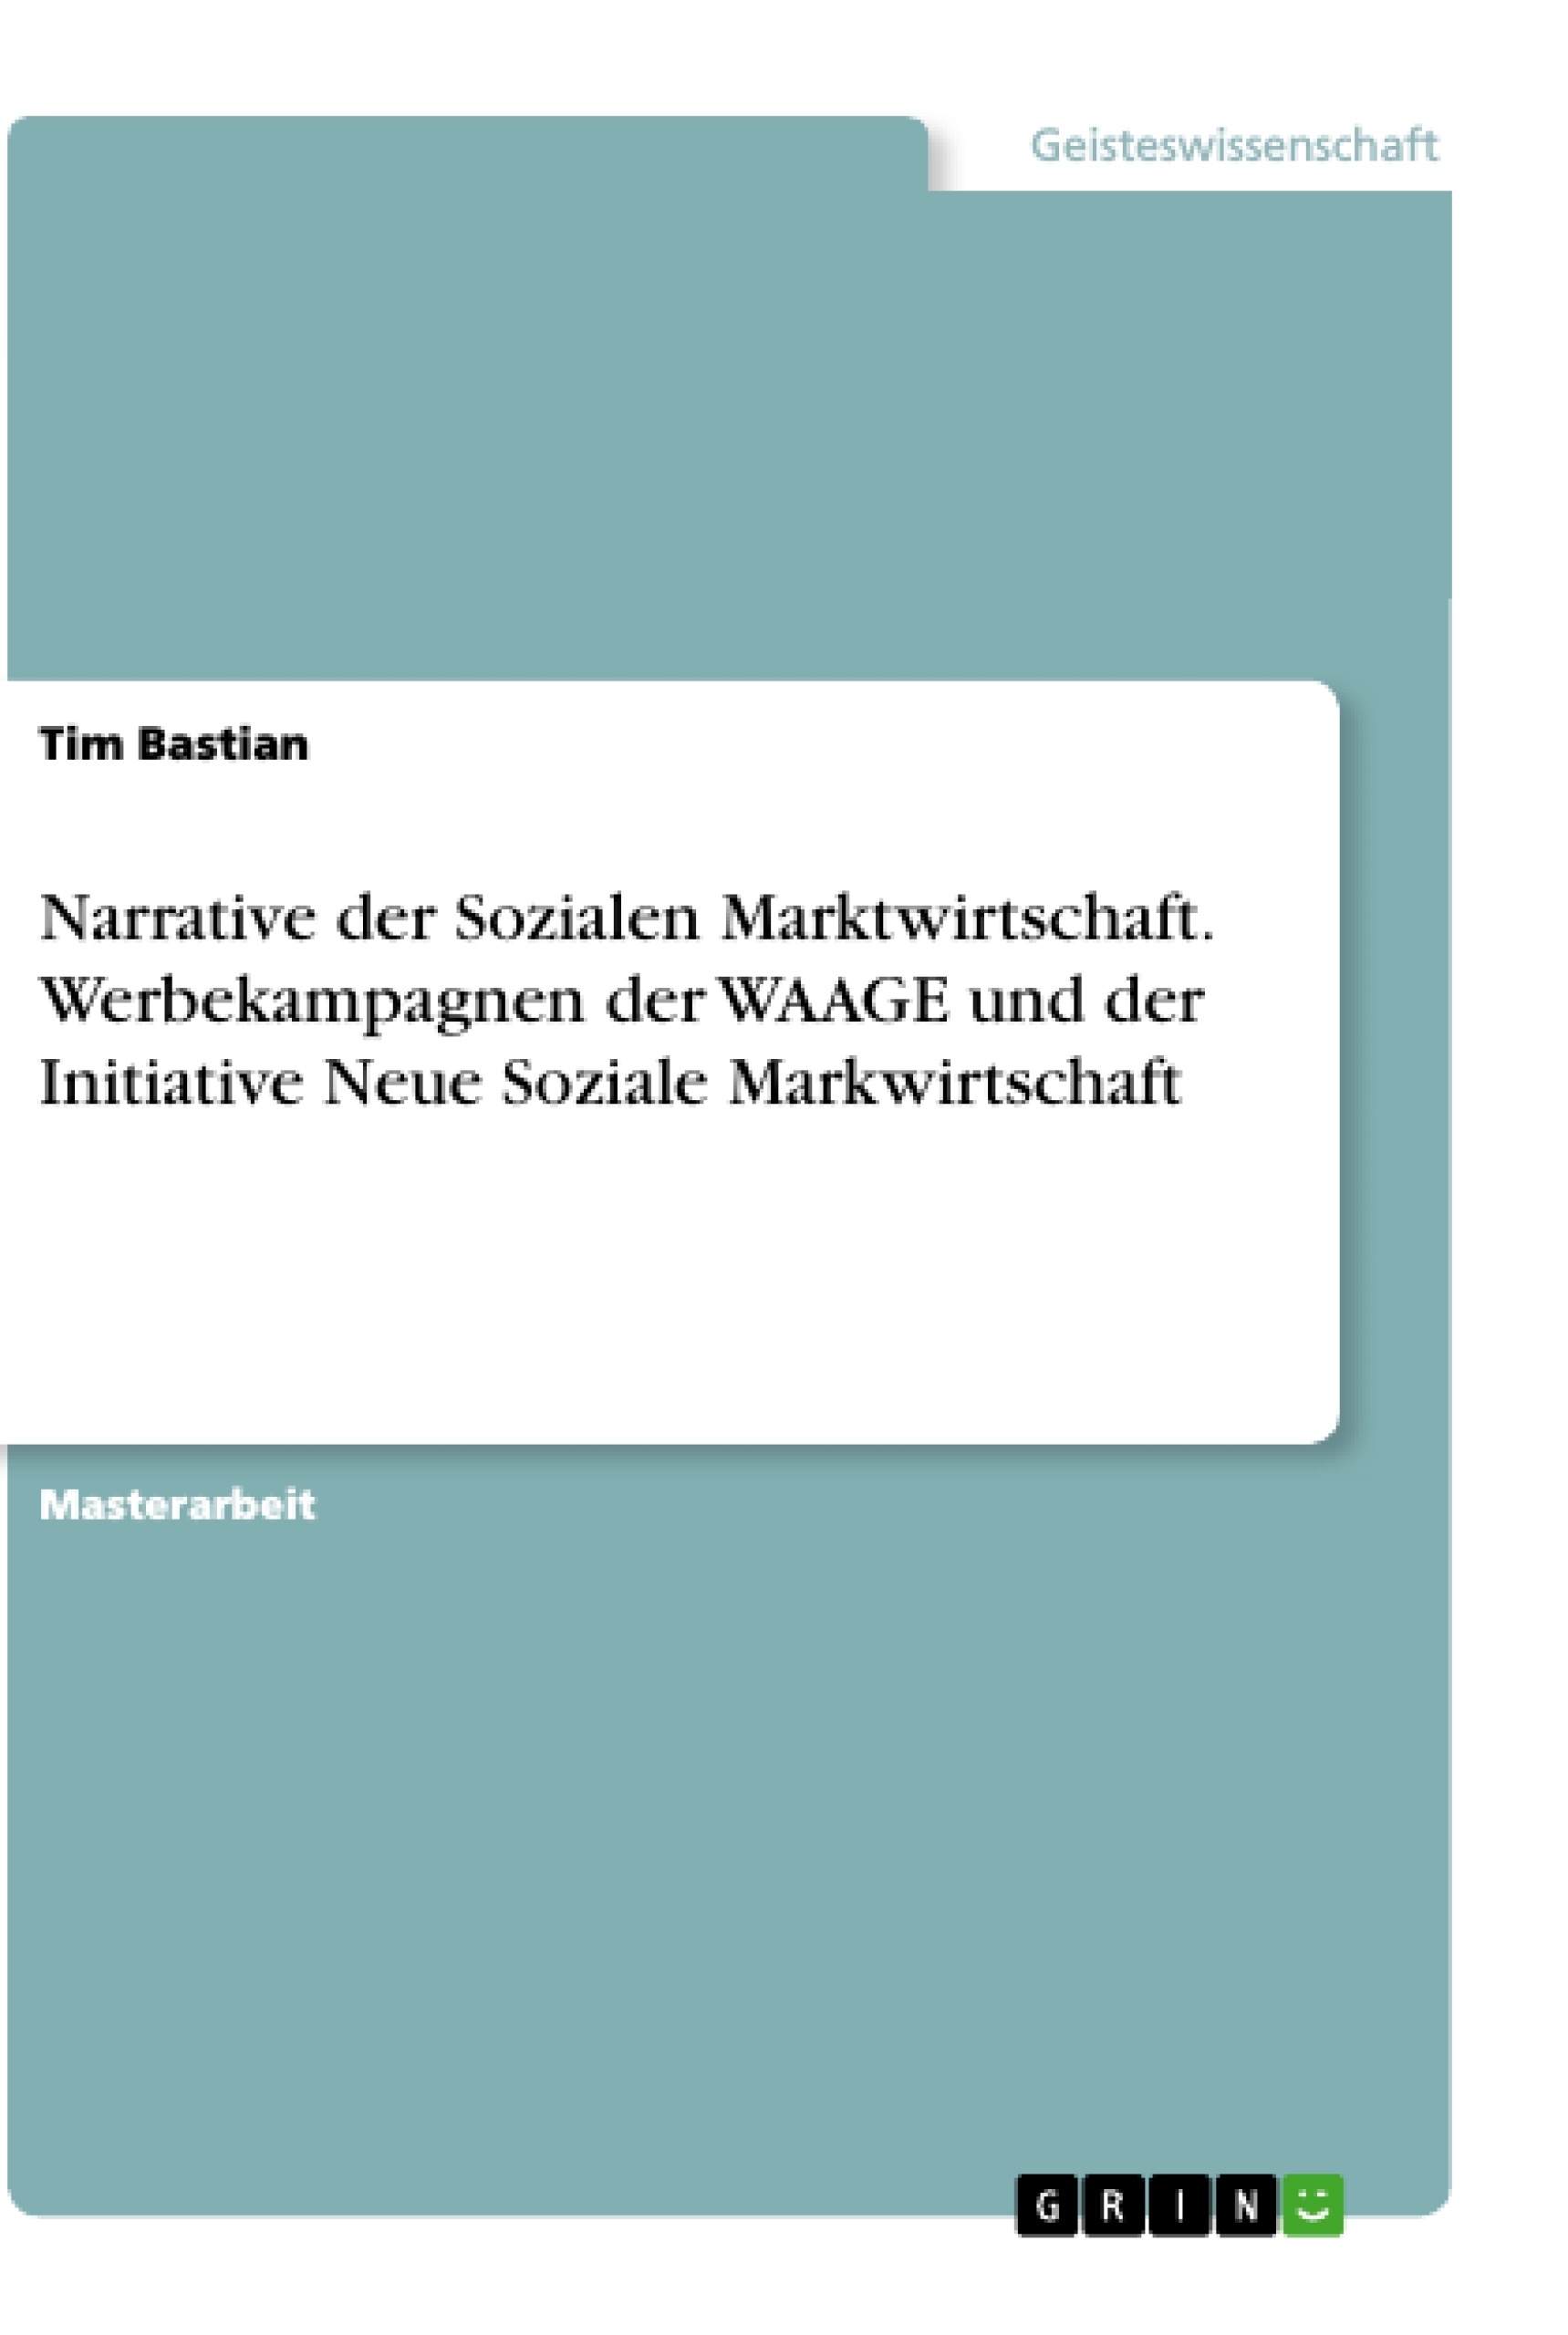 Titel: Narrative der Sozialen Marktwirtschaft. Werbekampagnen der WAAGE und der Initiative Neue Soziale Markwirtschaft